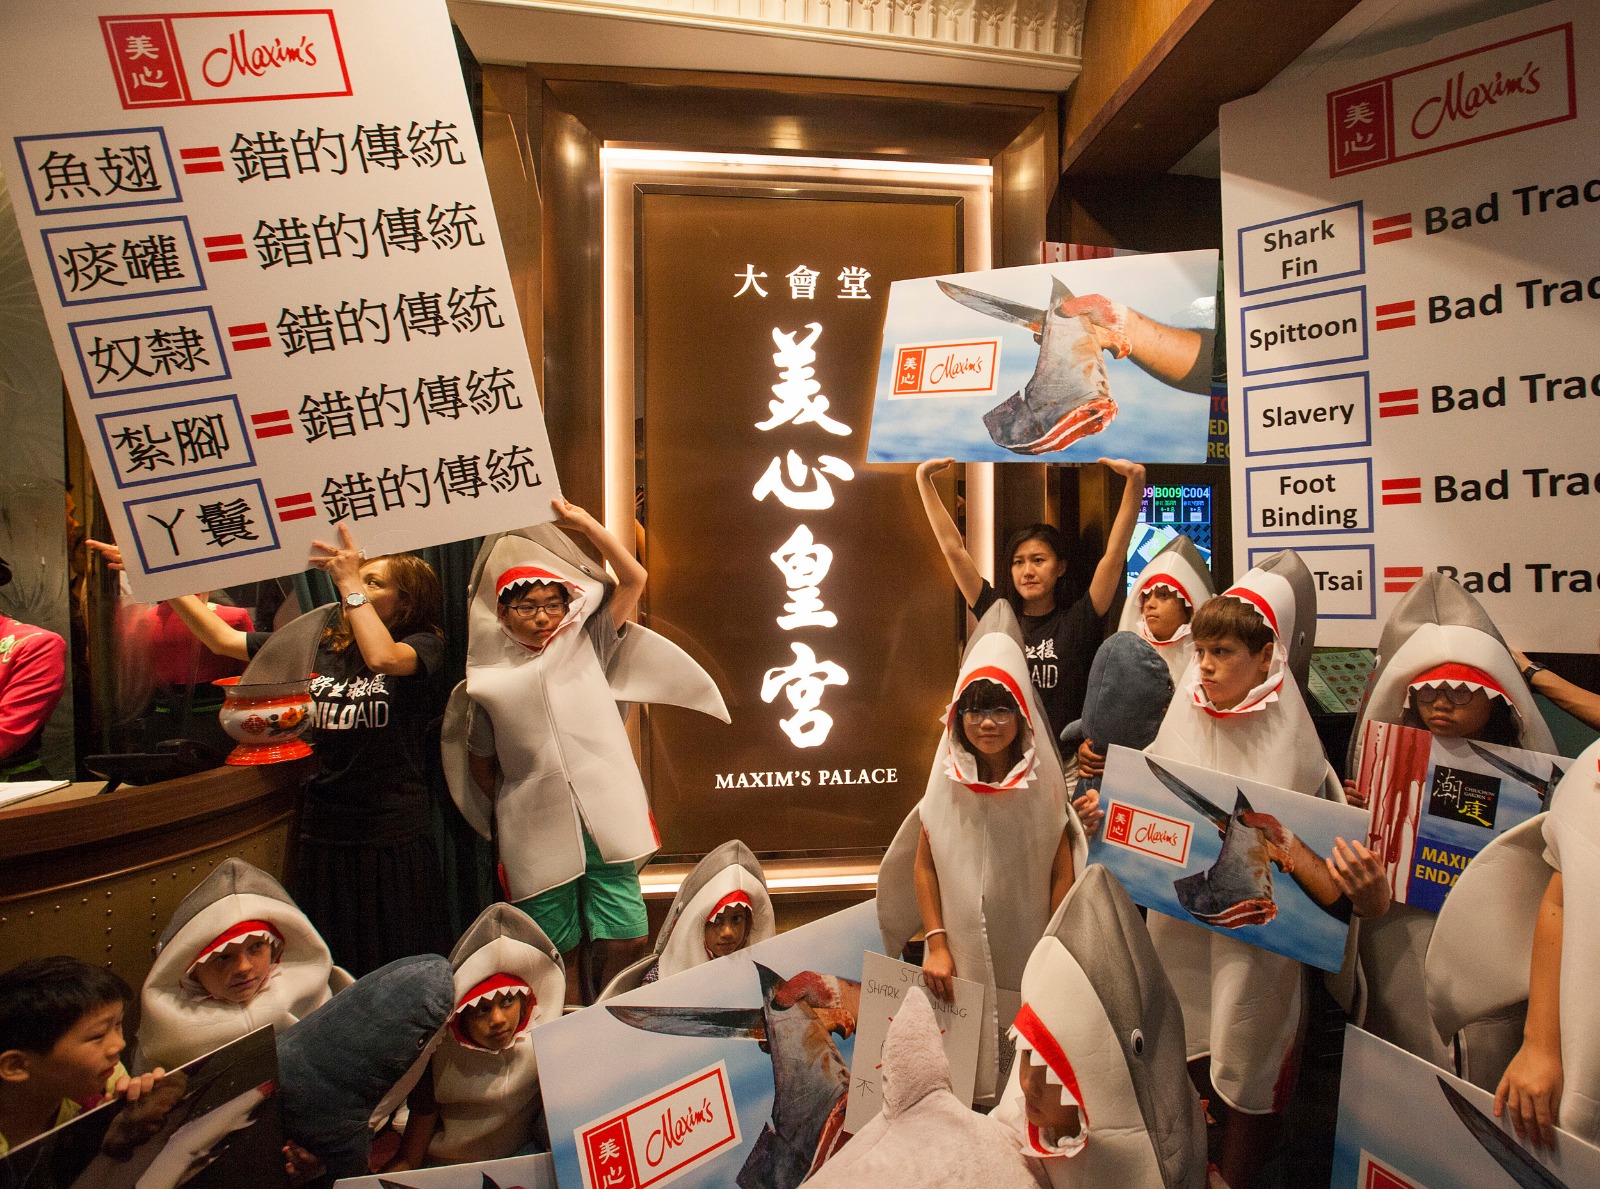 野生救援组织的反鱼翅消费活动人士在美心餐厅外进行抗议。(图片来源: Alex Hofford)